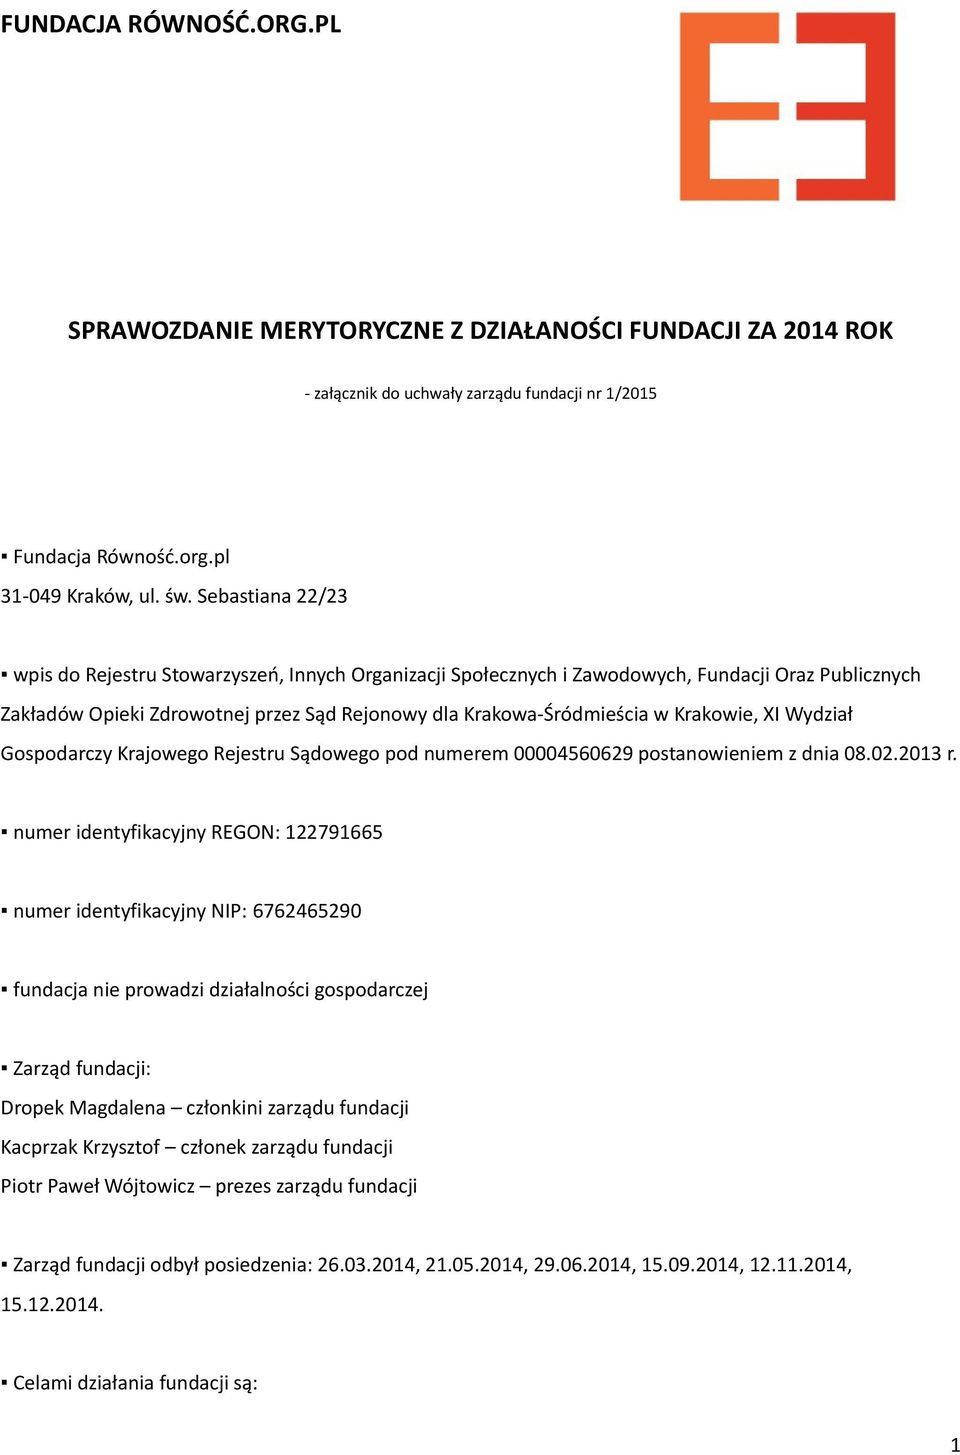 Krakowie, XI Wydział Gospodarczy Krajowego Rejestru Sądowego pod numerem 00004560629 postanowieniem z dnia 08.02.2013 r.